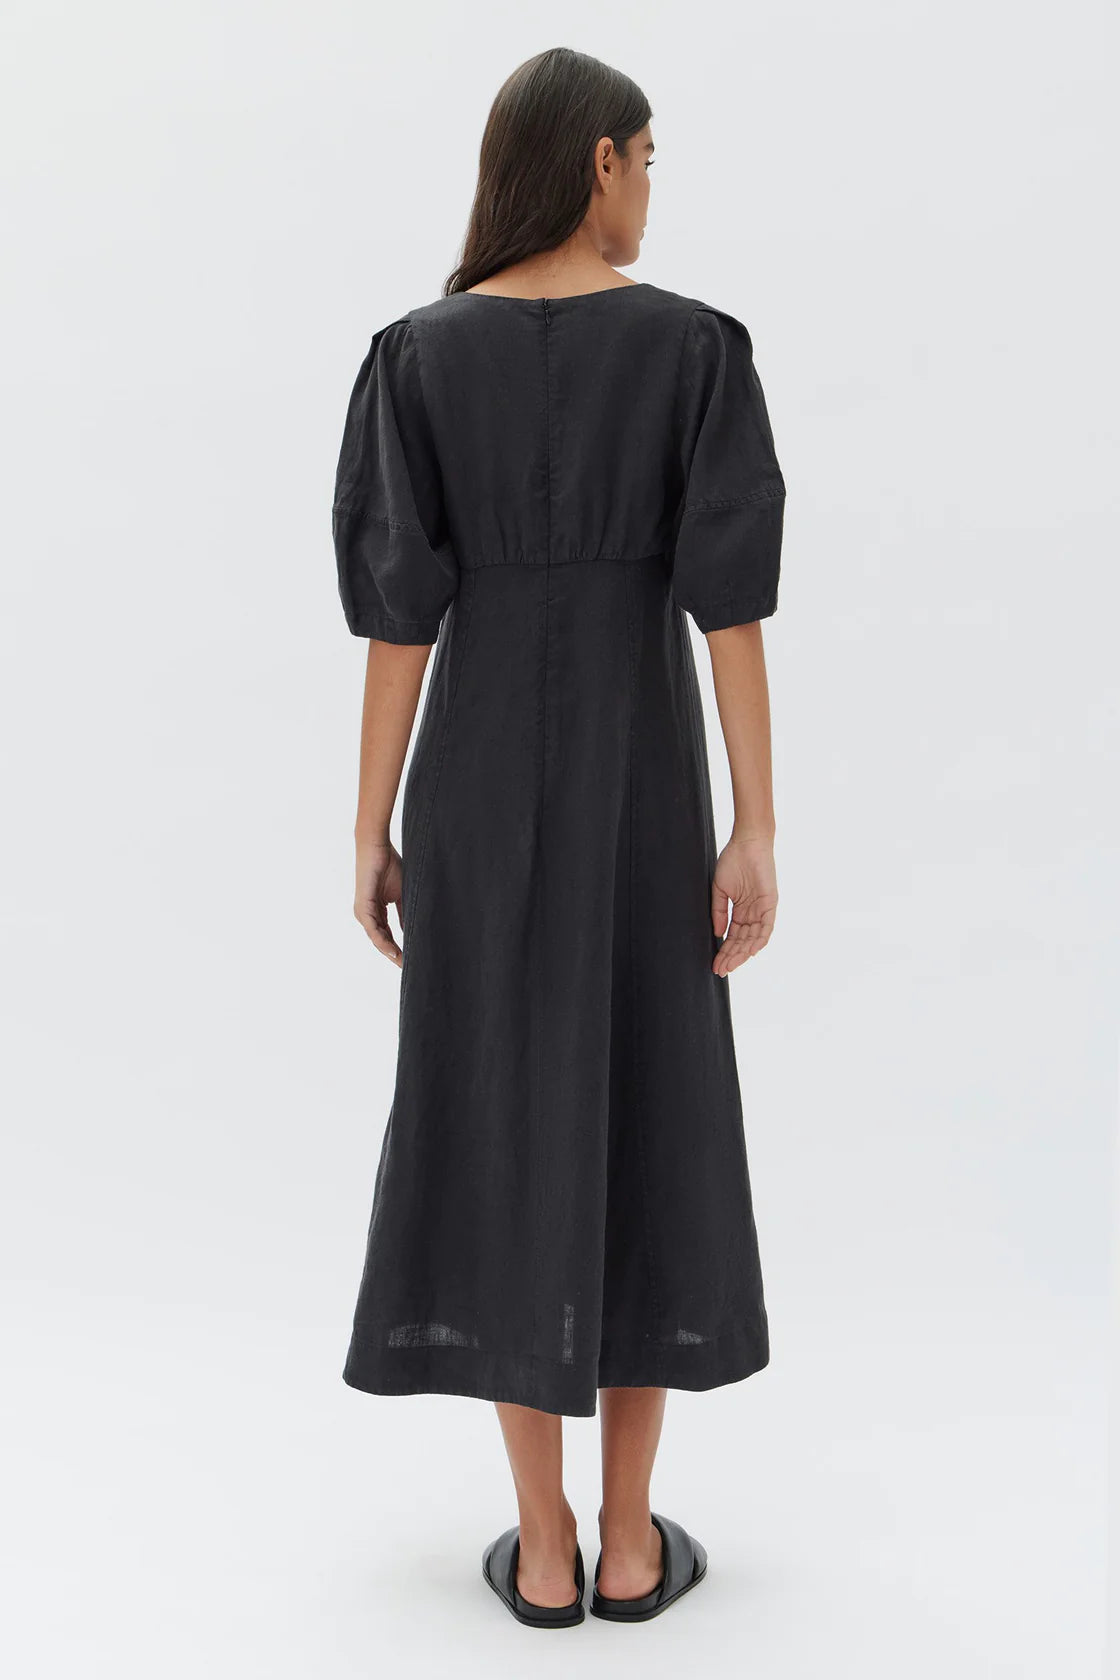 Tia Linen Dress Black